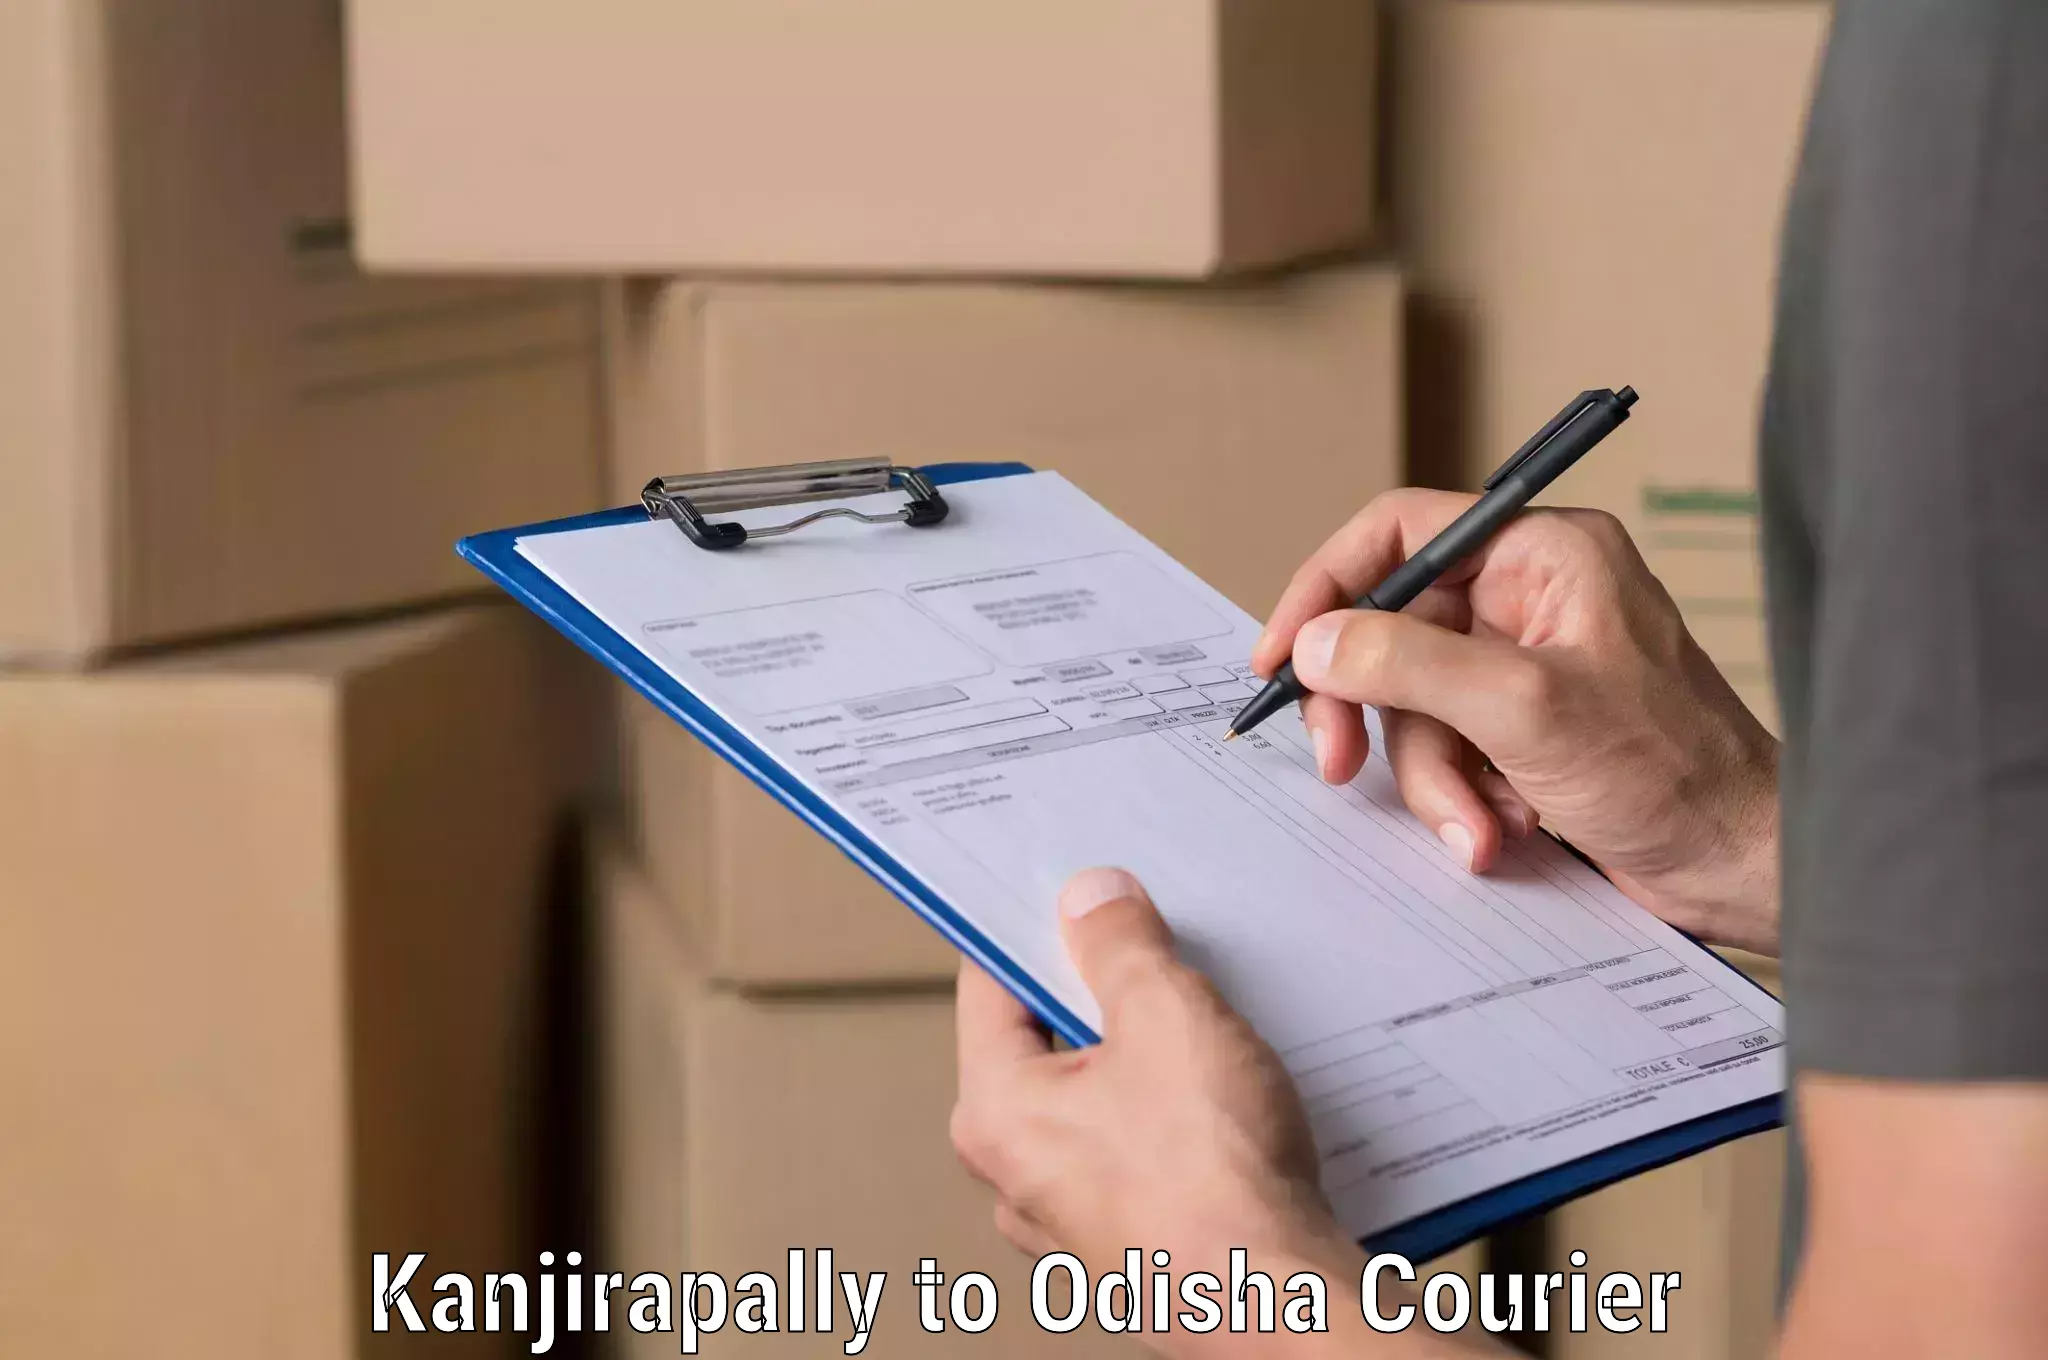 Efficient logistics management Kanjirapally to Mathili